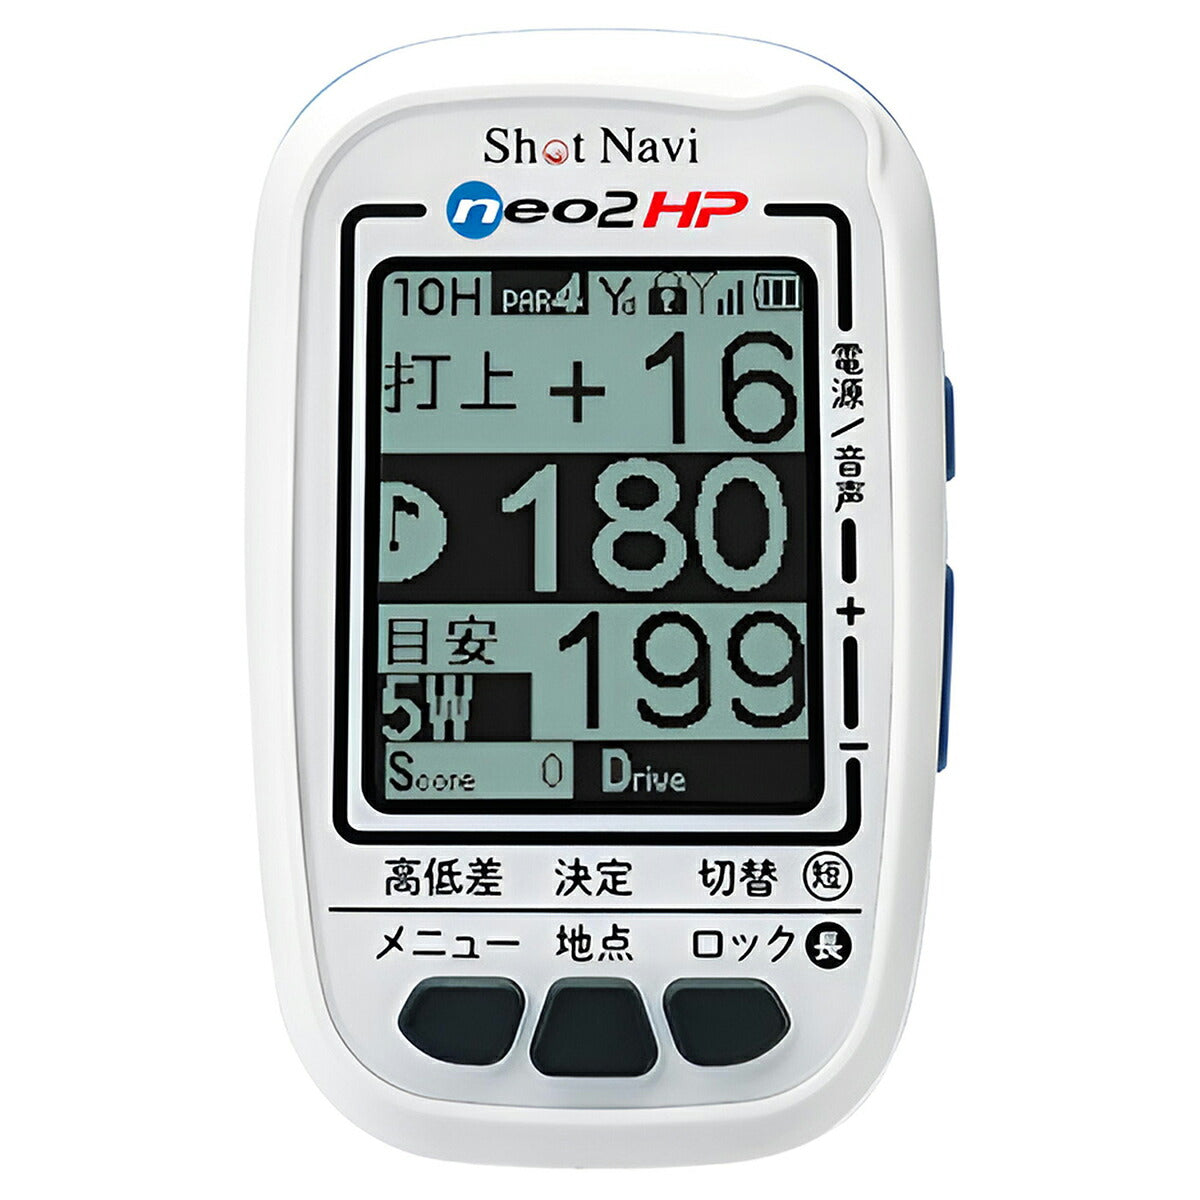 ショットナビ Shot Navi NEO2 HP ネオ2HP ハンディタイプ GPS ゴルフナビ 距離測定器 距離計測器